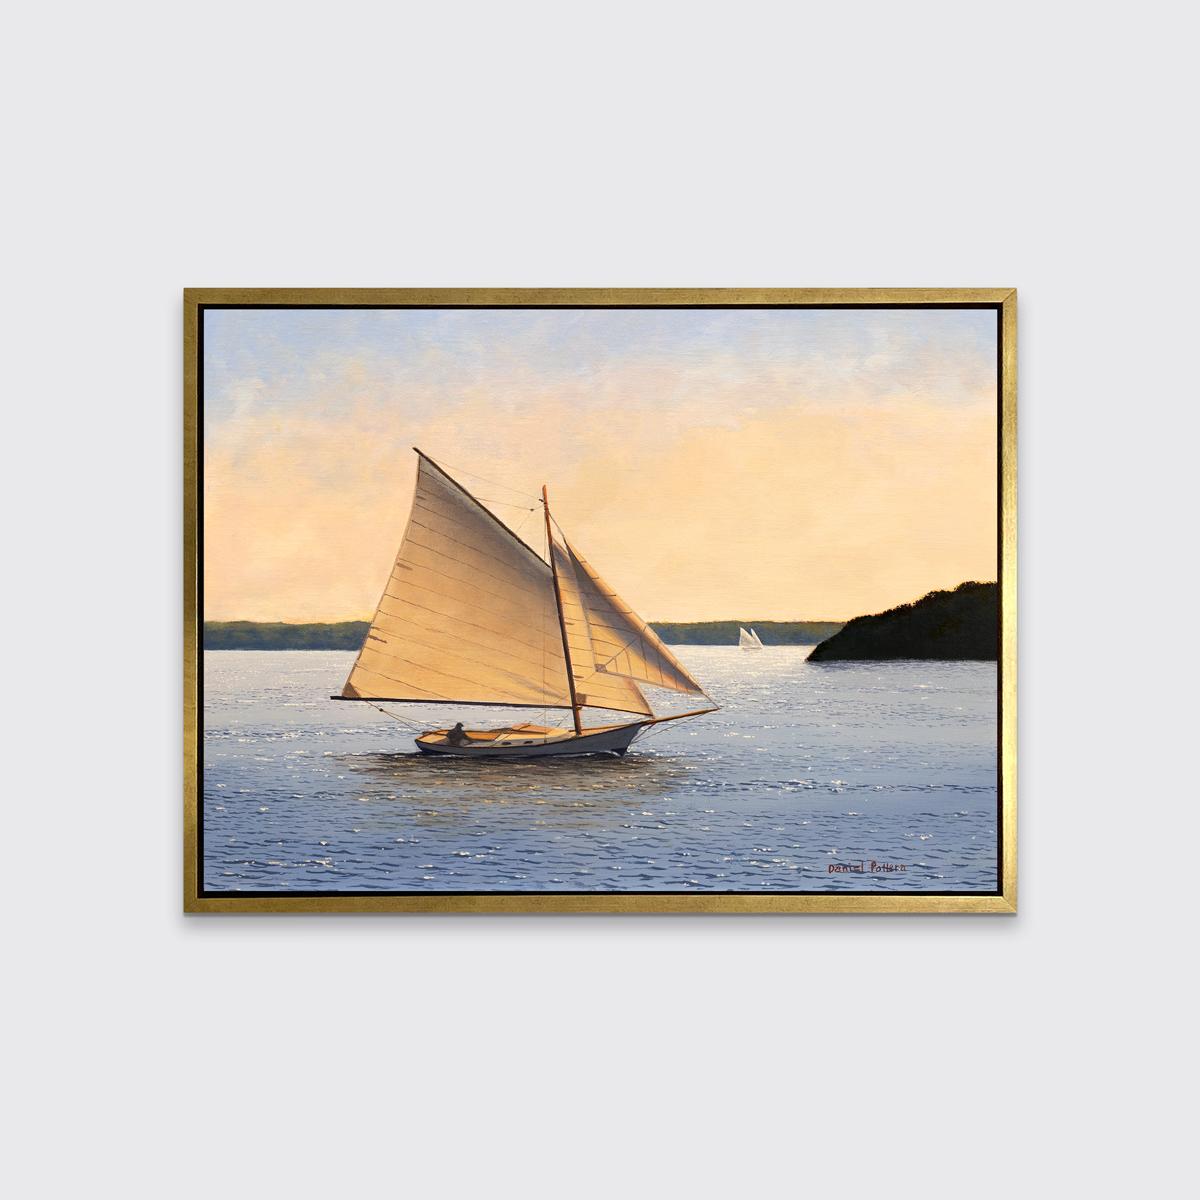 Dieser Giclée-Druck in limitierter Auflage von Daniel Pollera zeigt ein Segelboot bei Sonnenuntergang. Im Boot selbst ist eine einzelne Figur zu sehen, die an einer schattigen, mit Bäumen und Laub bedeckten Küstenlinie vorbeifährt, während andere